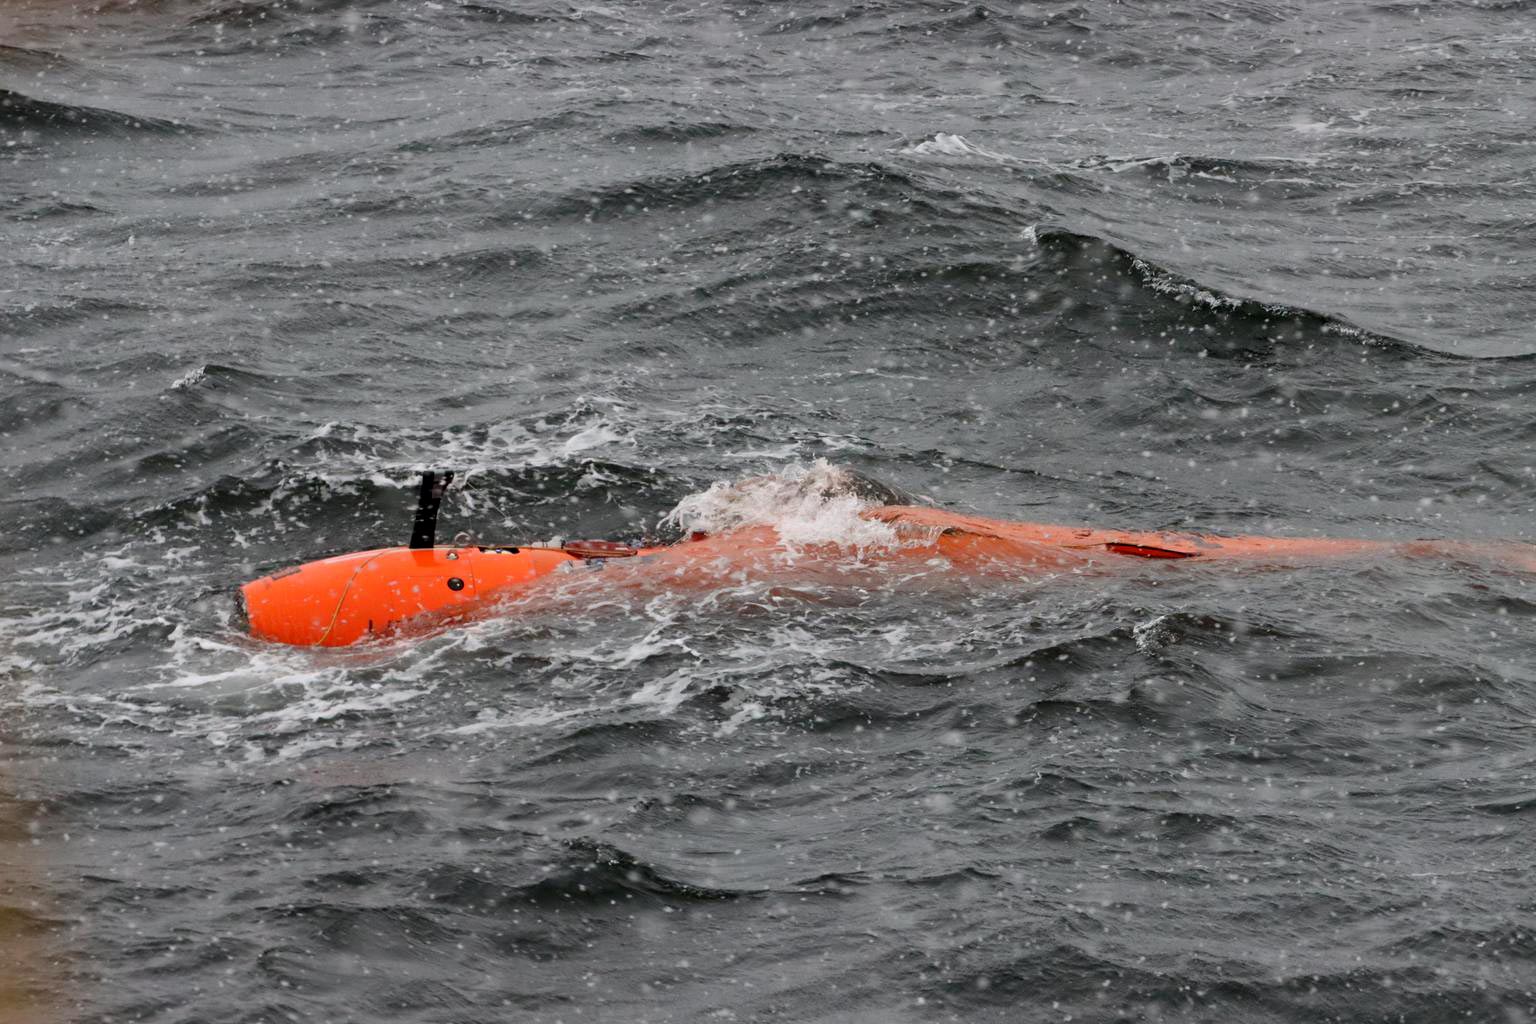 مستكشف تحت الماء يختفي بشكل غامض في القارة القطبية الجنوبية